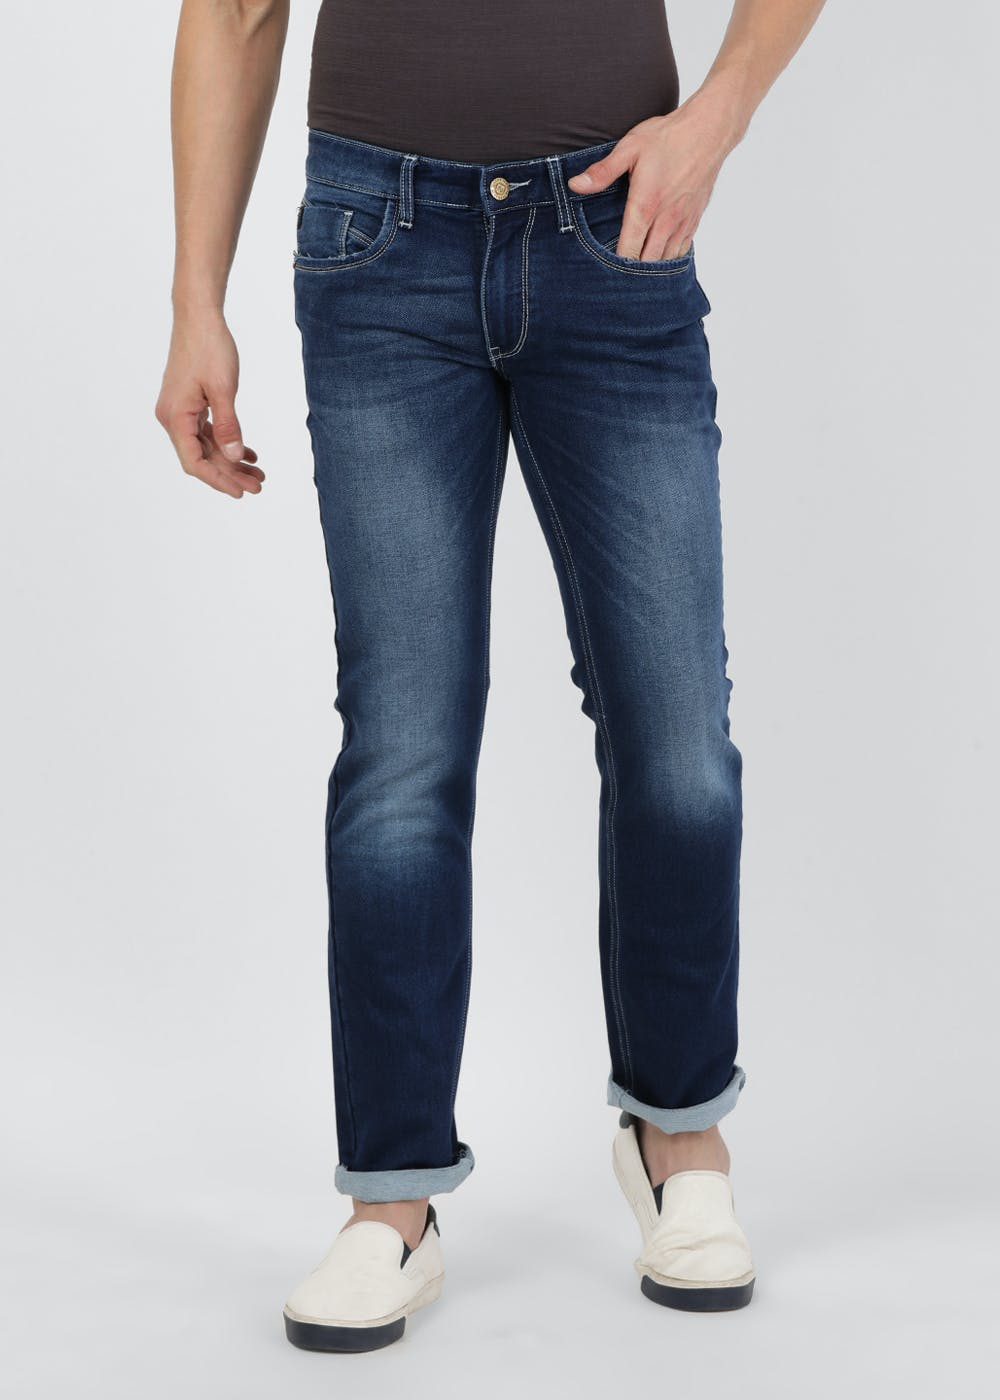 Get Denim Washed Basic Skinny Fit Jeans at ₹ 1125 | LBB Shop